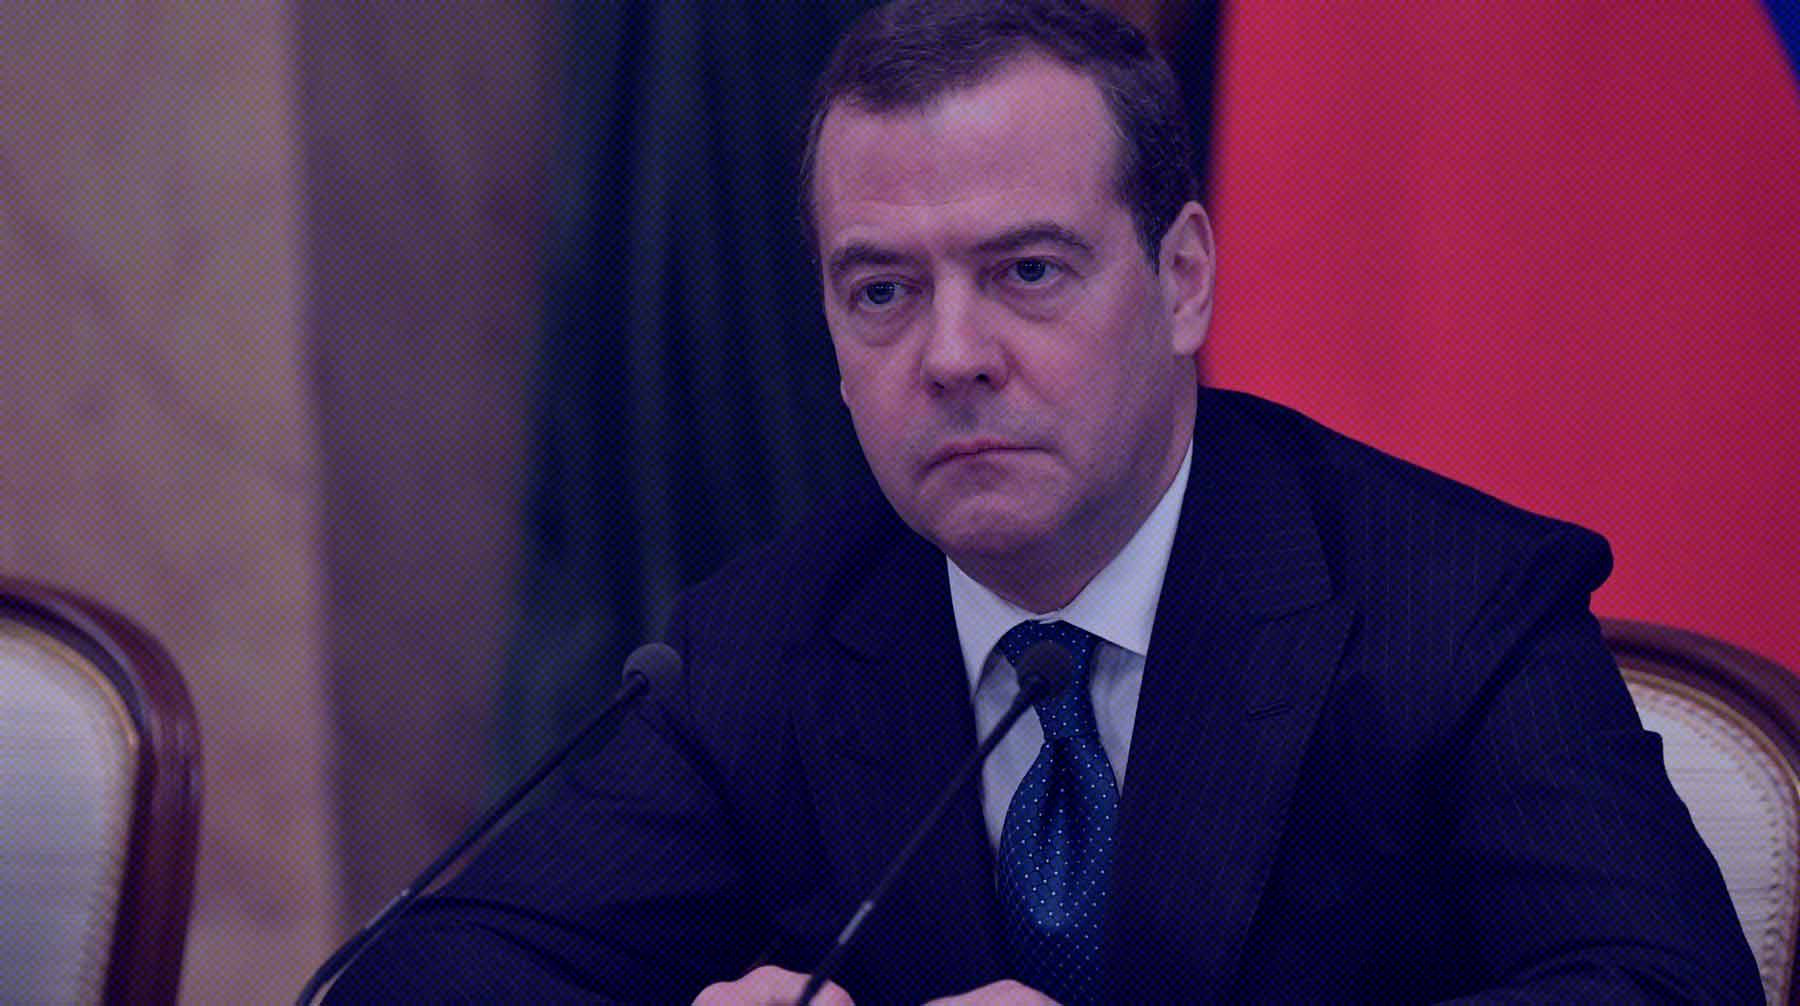 Dailystorm - Медведев: Россия не виновата в том, что европейцы будут люто мерзнуть в своих домах этой зимой